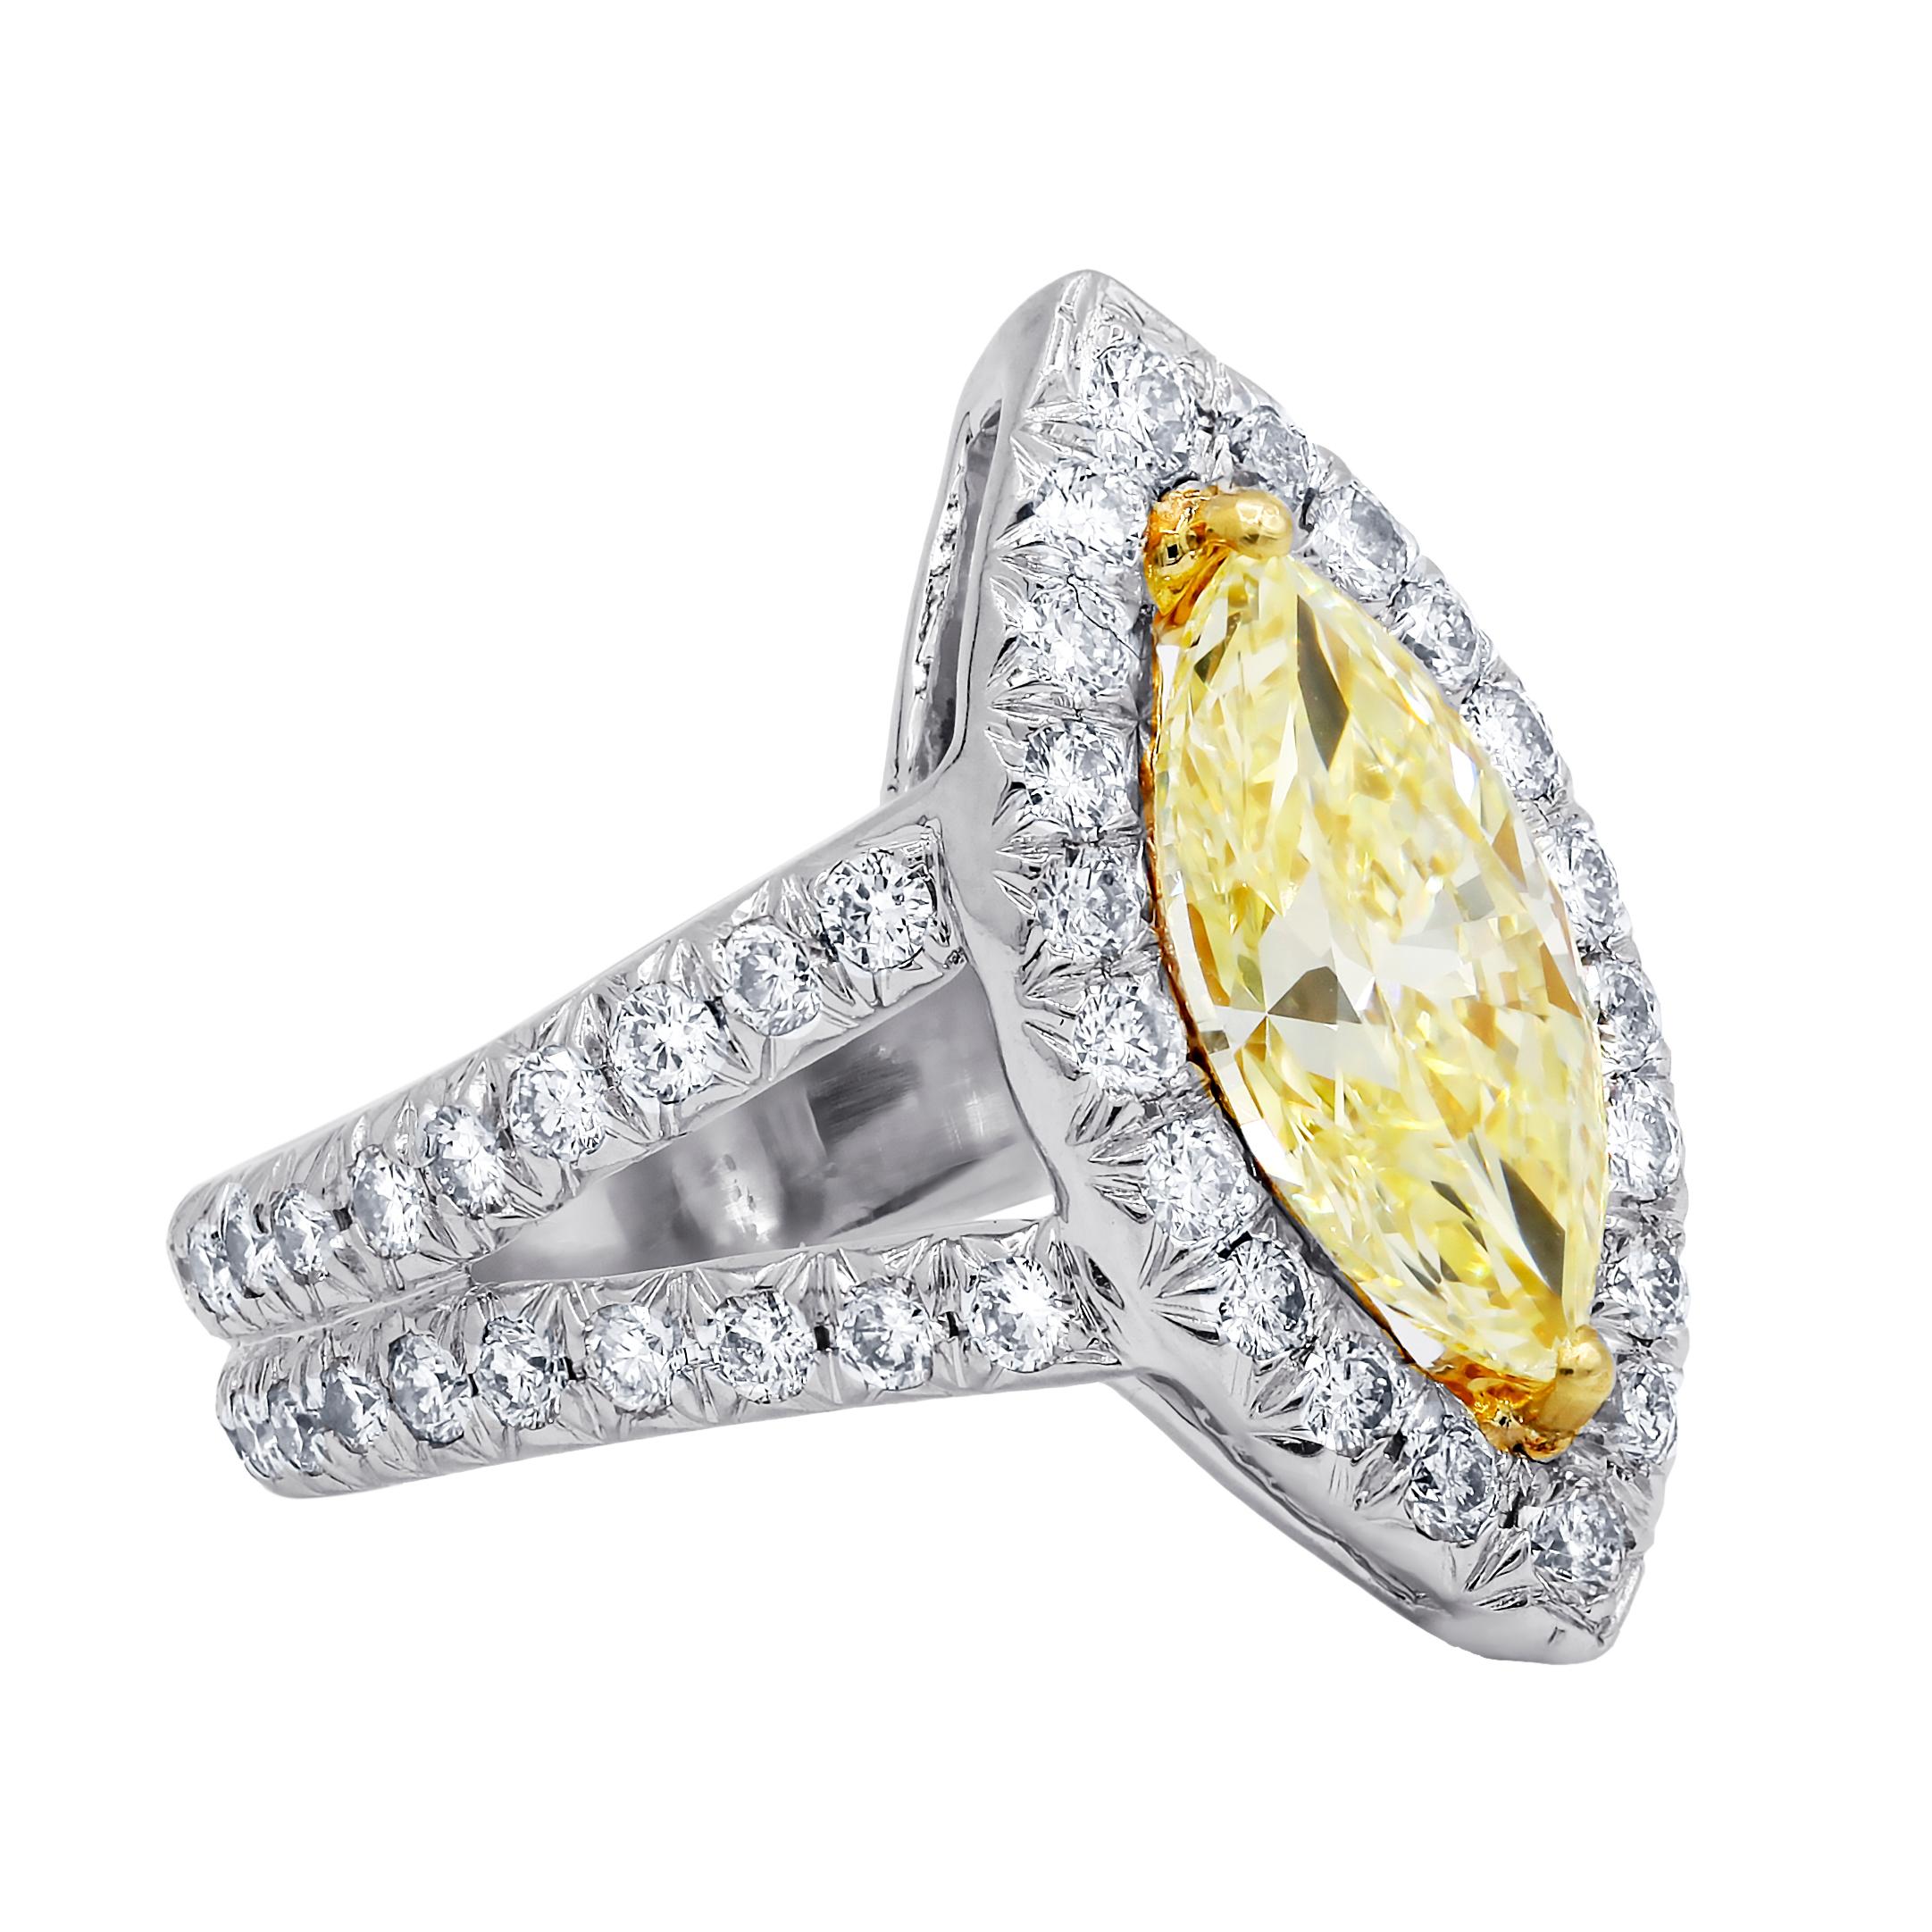 Platin und 18kt Diamant Verlobungsring mit 2,51cts fancy yellow vs2 (mqc175)
gefasst in einem geteilten Schaft mit rundum und in Halo gefassten Diamanten 